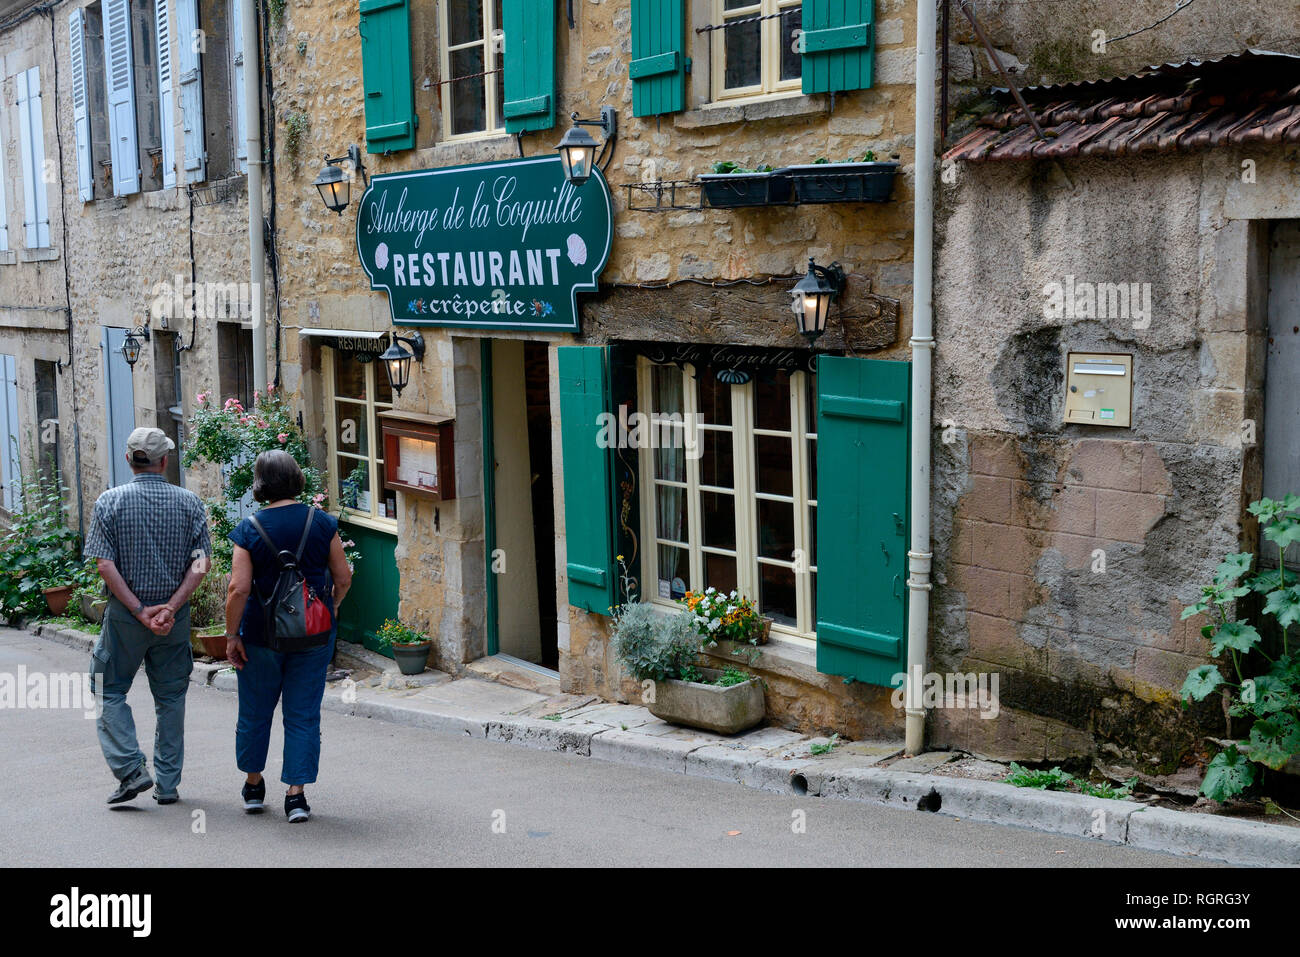 Vezelay, Dorfstrasse mit Restaurante, Vezelay, Burgund, Departement Yonne, Frankreich, Europa, Frankreich Foto de stock